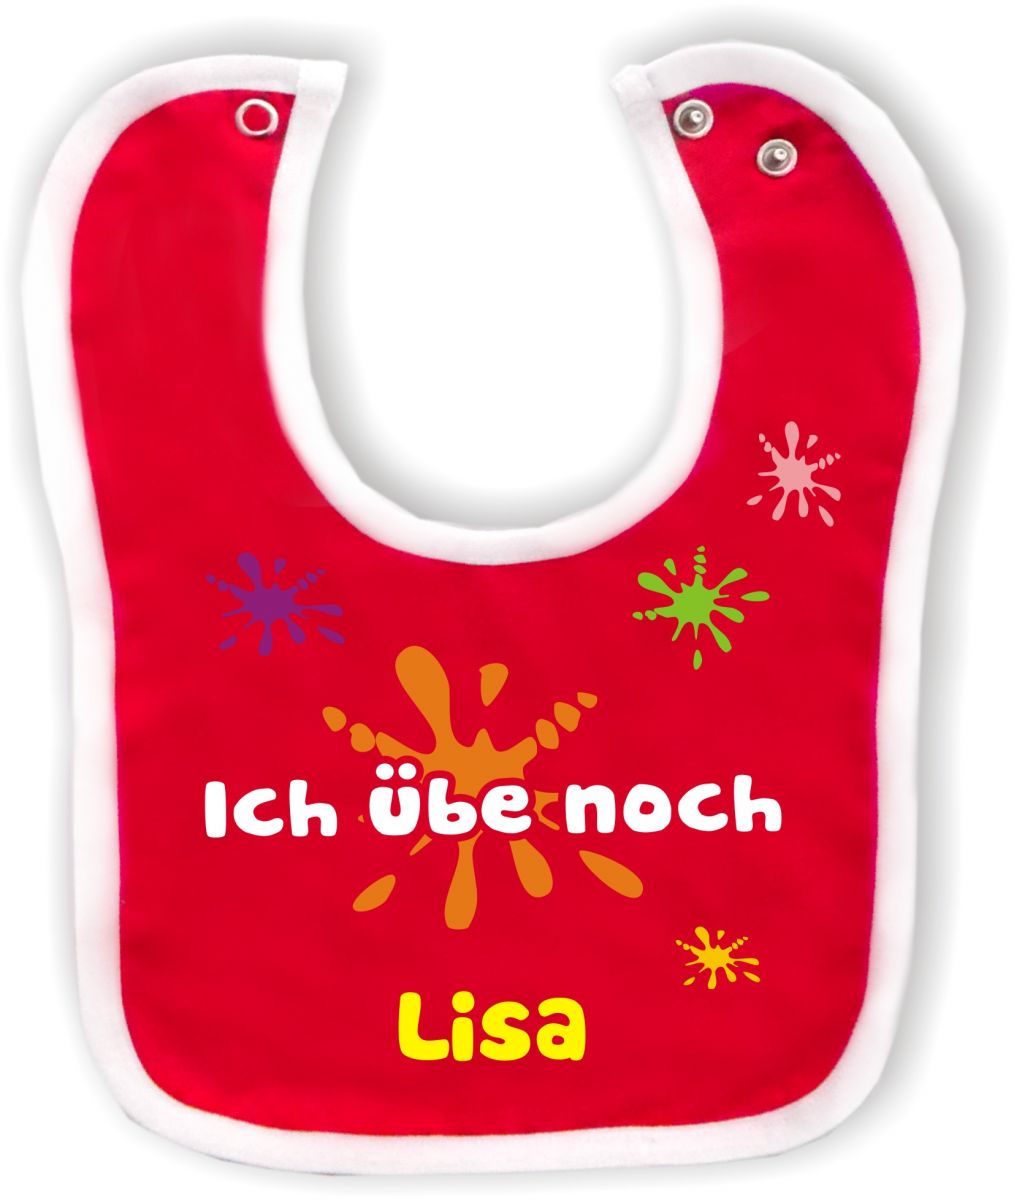 Baby Sonnenschutz selbst gestalten /druckreich.com